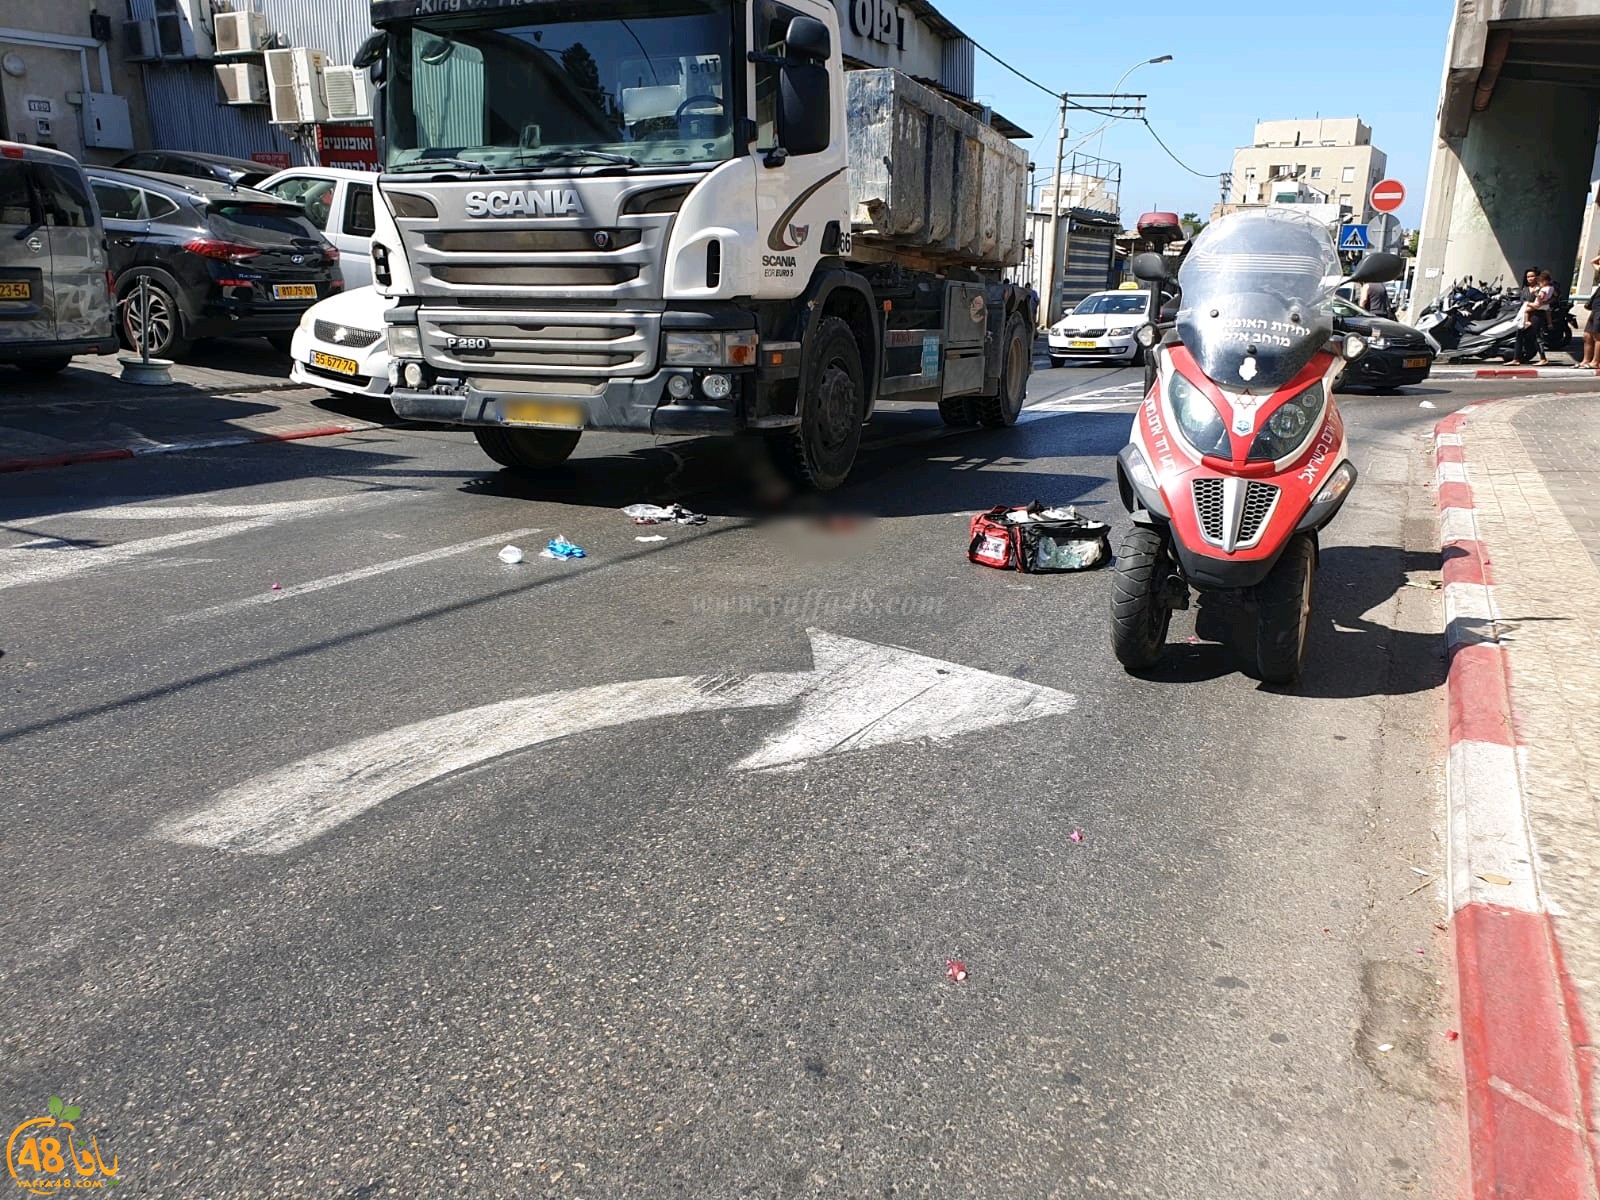  يافا: إصابة خطرة لمسنّة دهستها شاحنة جمع النفايات بالمدينة 